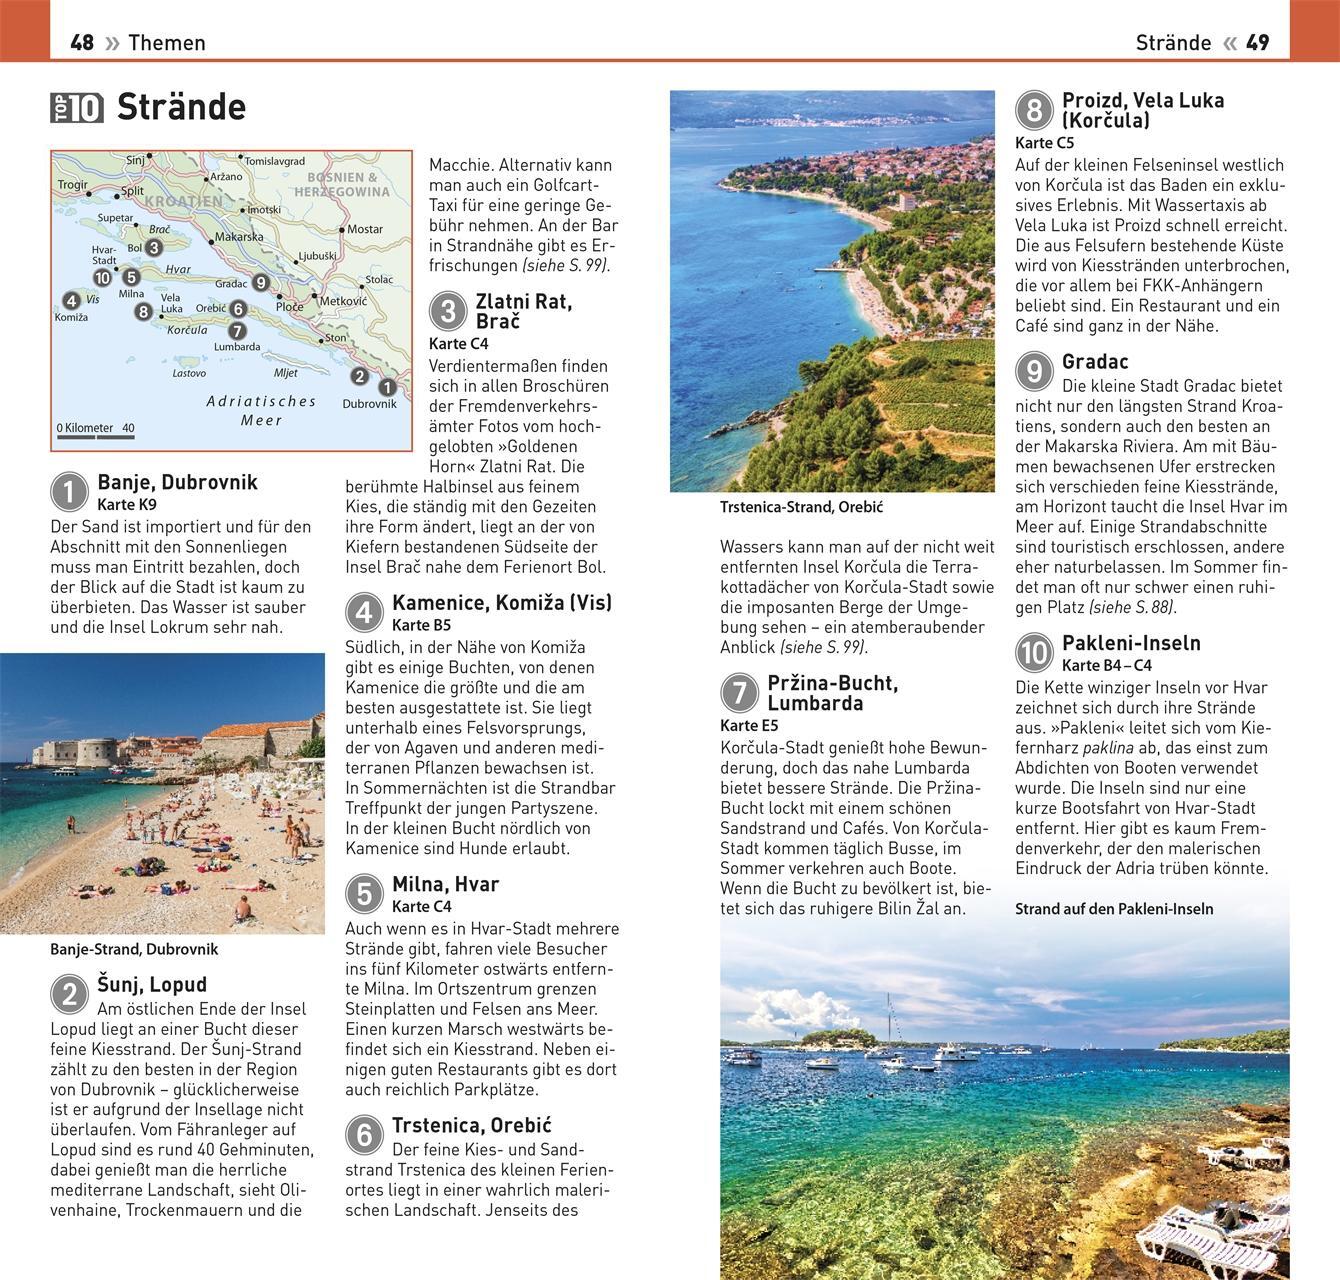 Bild: 9783734207259 | TOP10 Reiseführer Dubrovnik &amp; Dalmatinische Küste | Taschenbuch | 2023